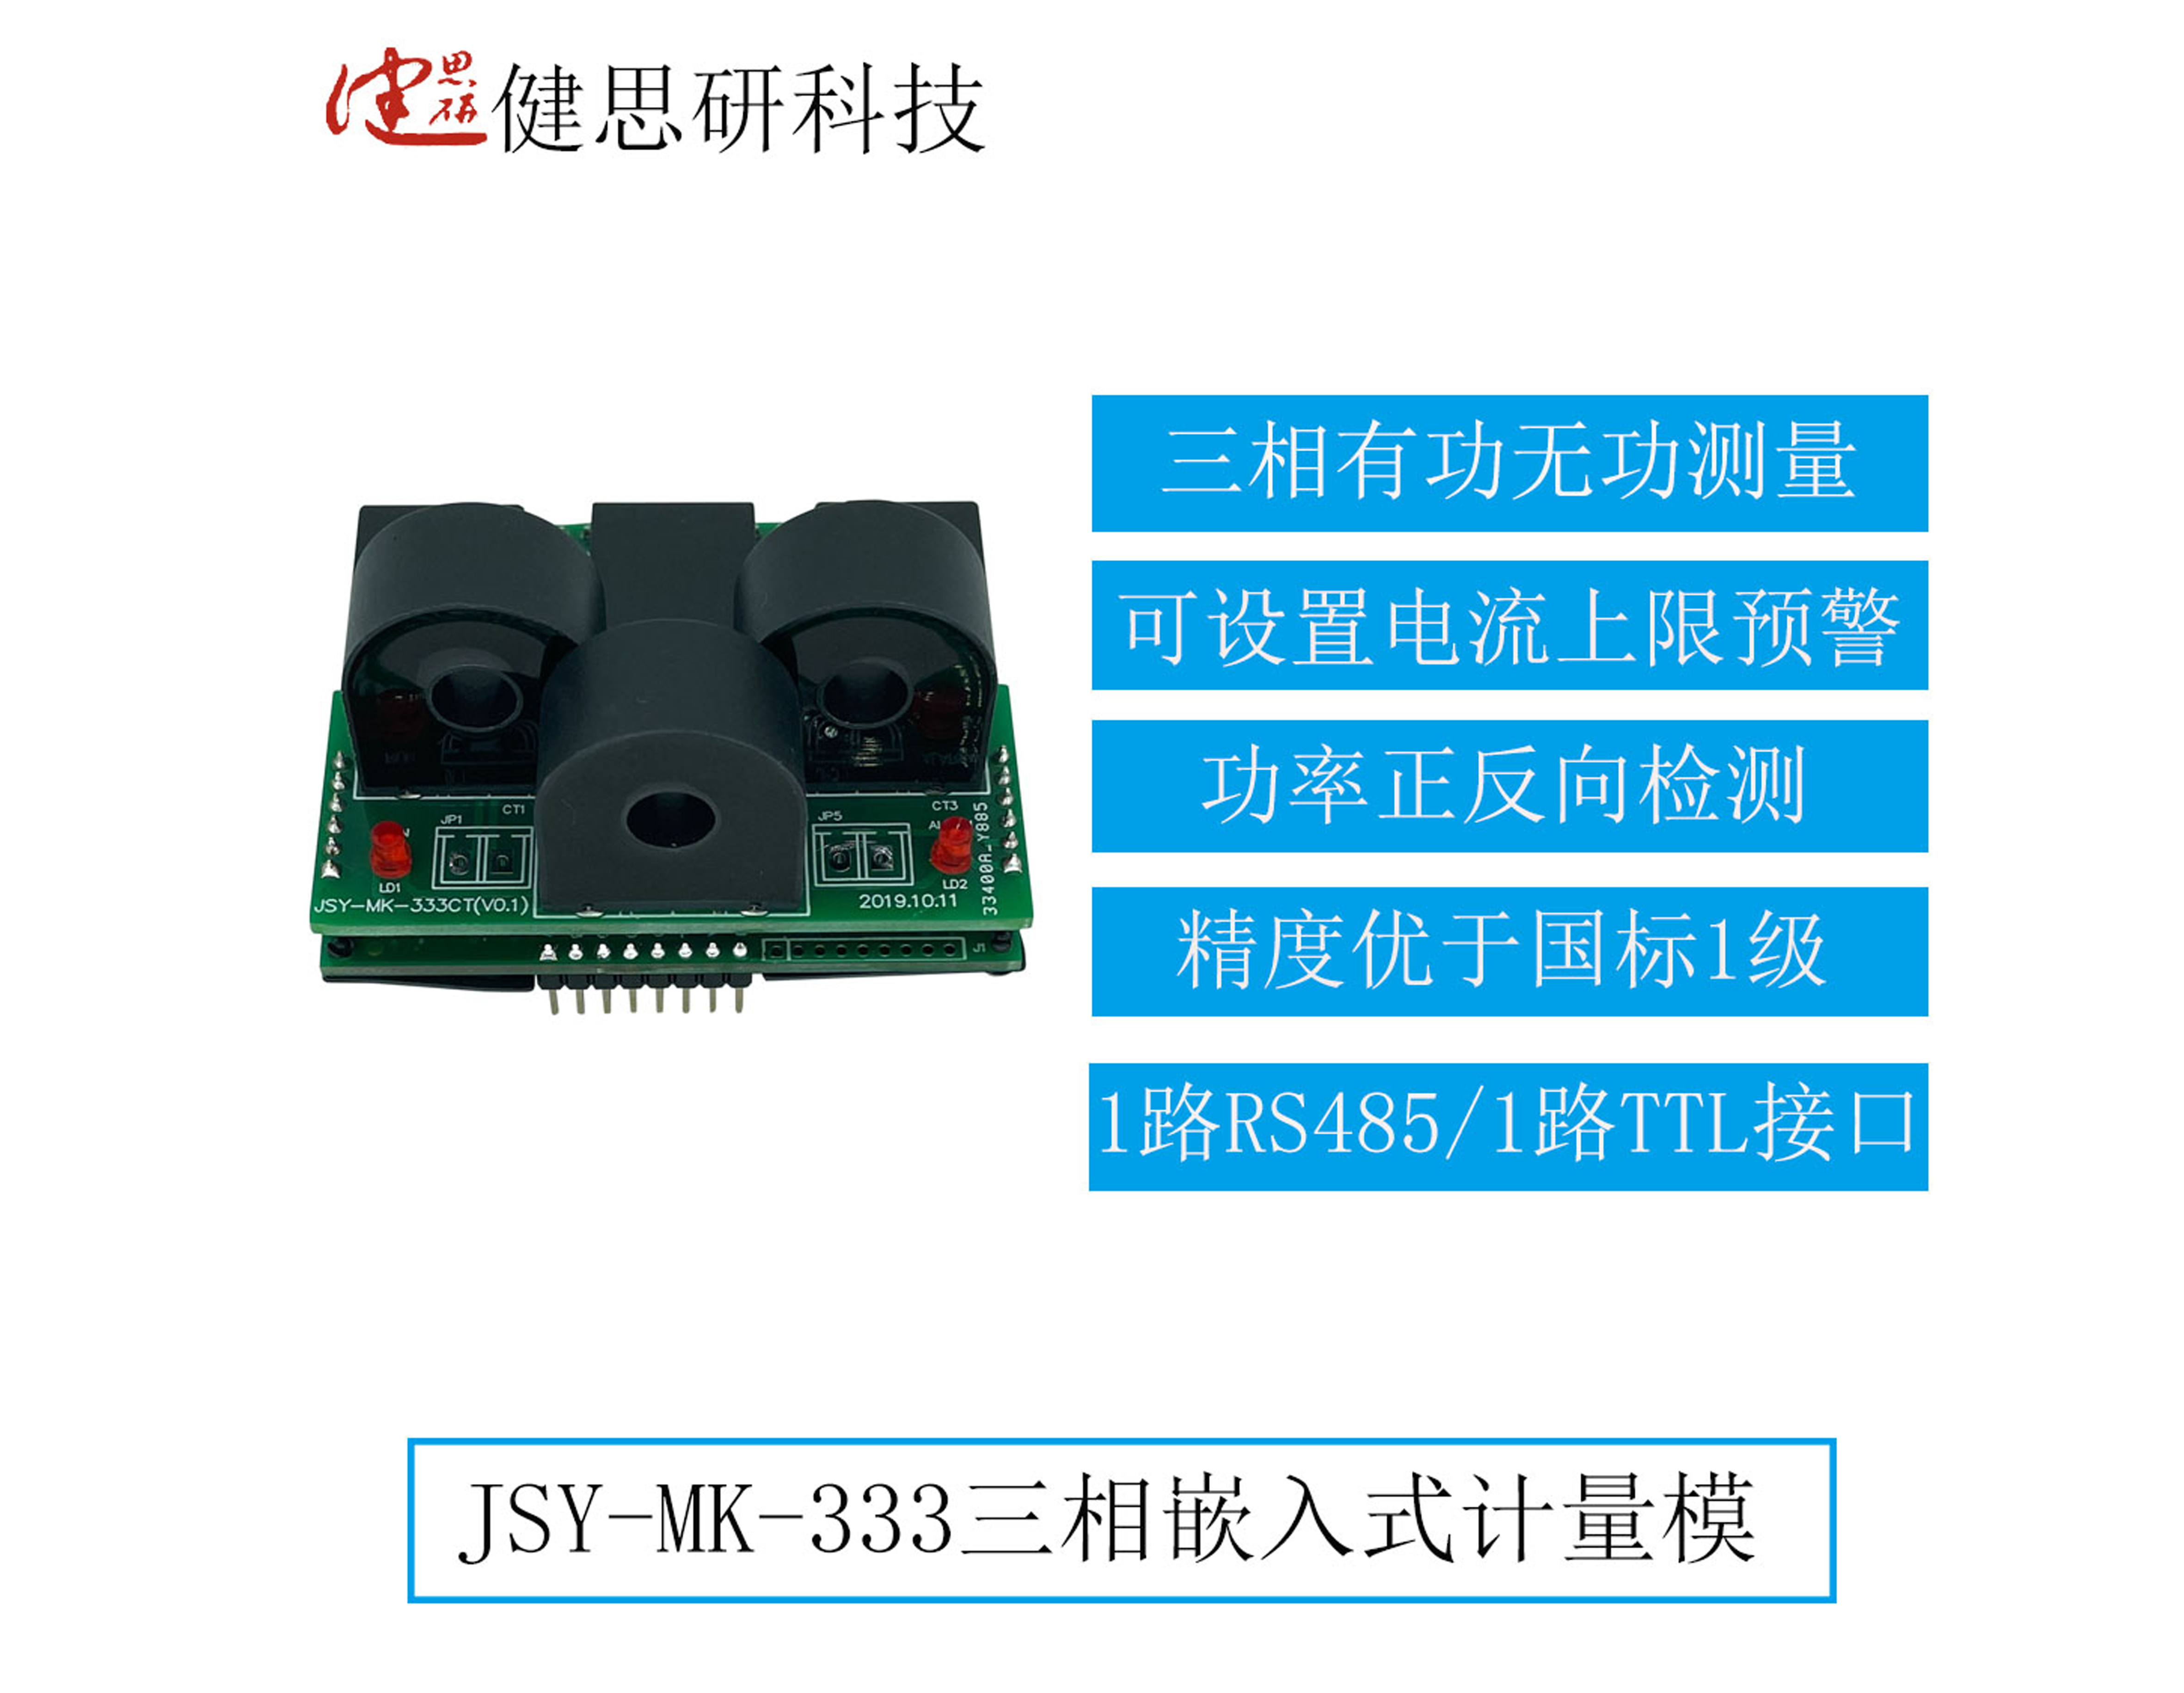 JSY-MK-333三相嵌入式电能计量模块有什么功能、如果使用？